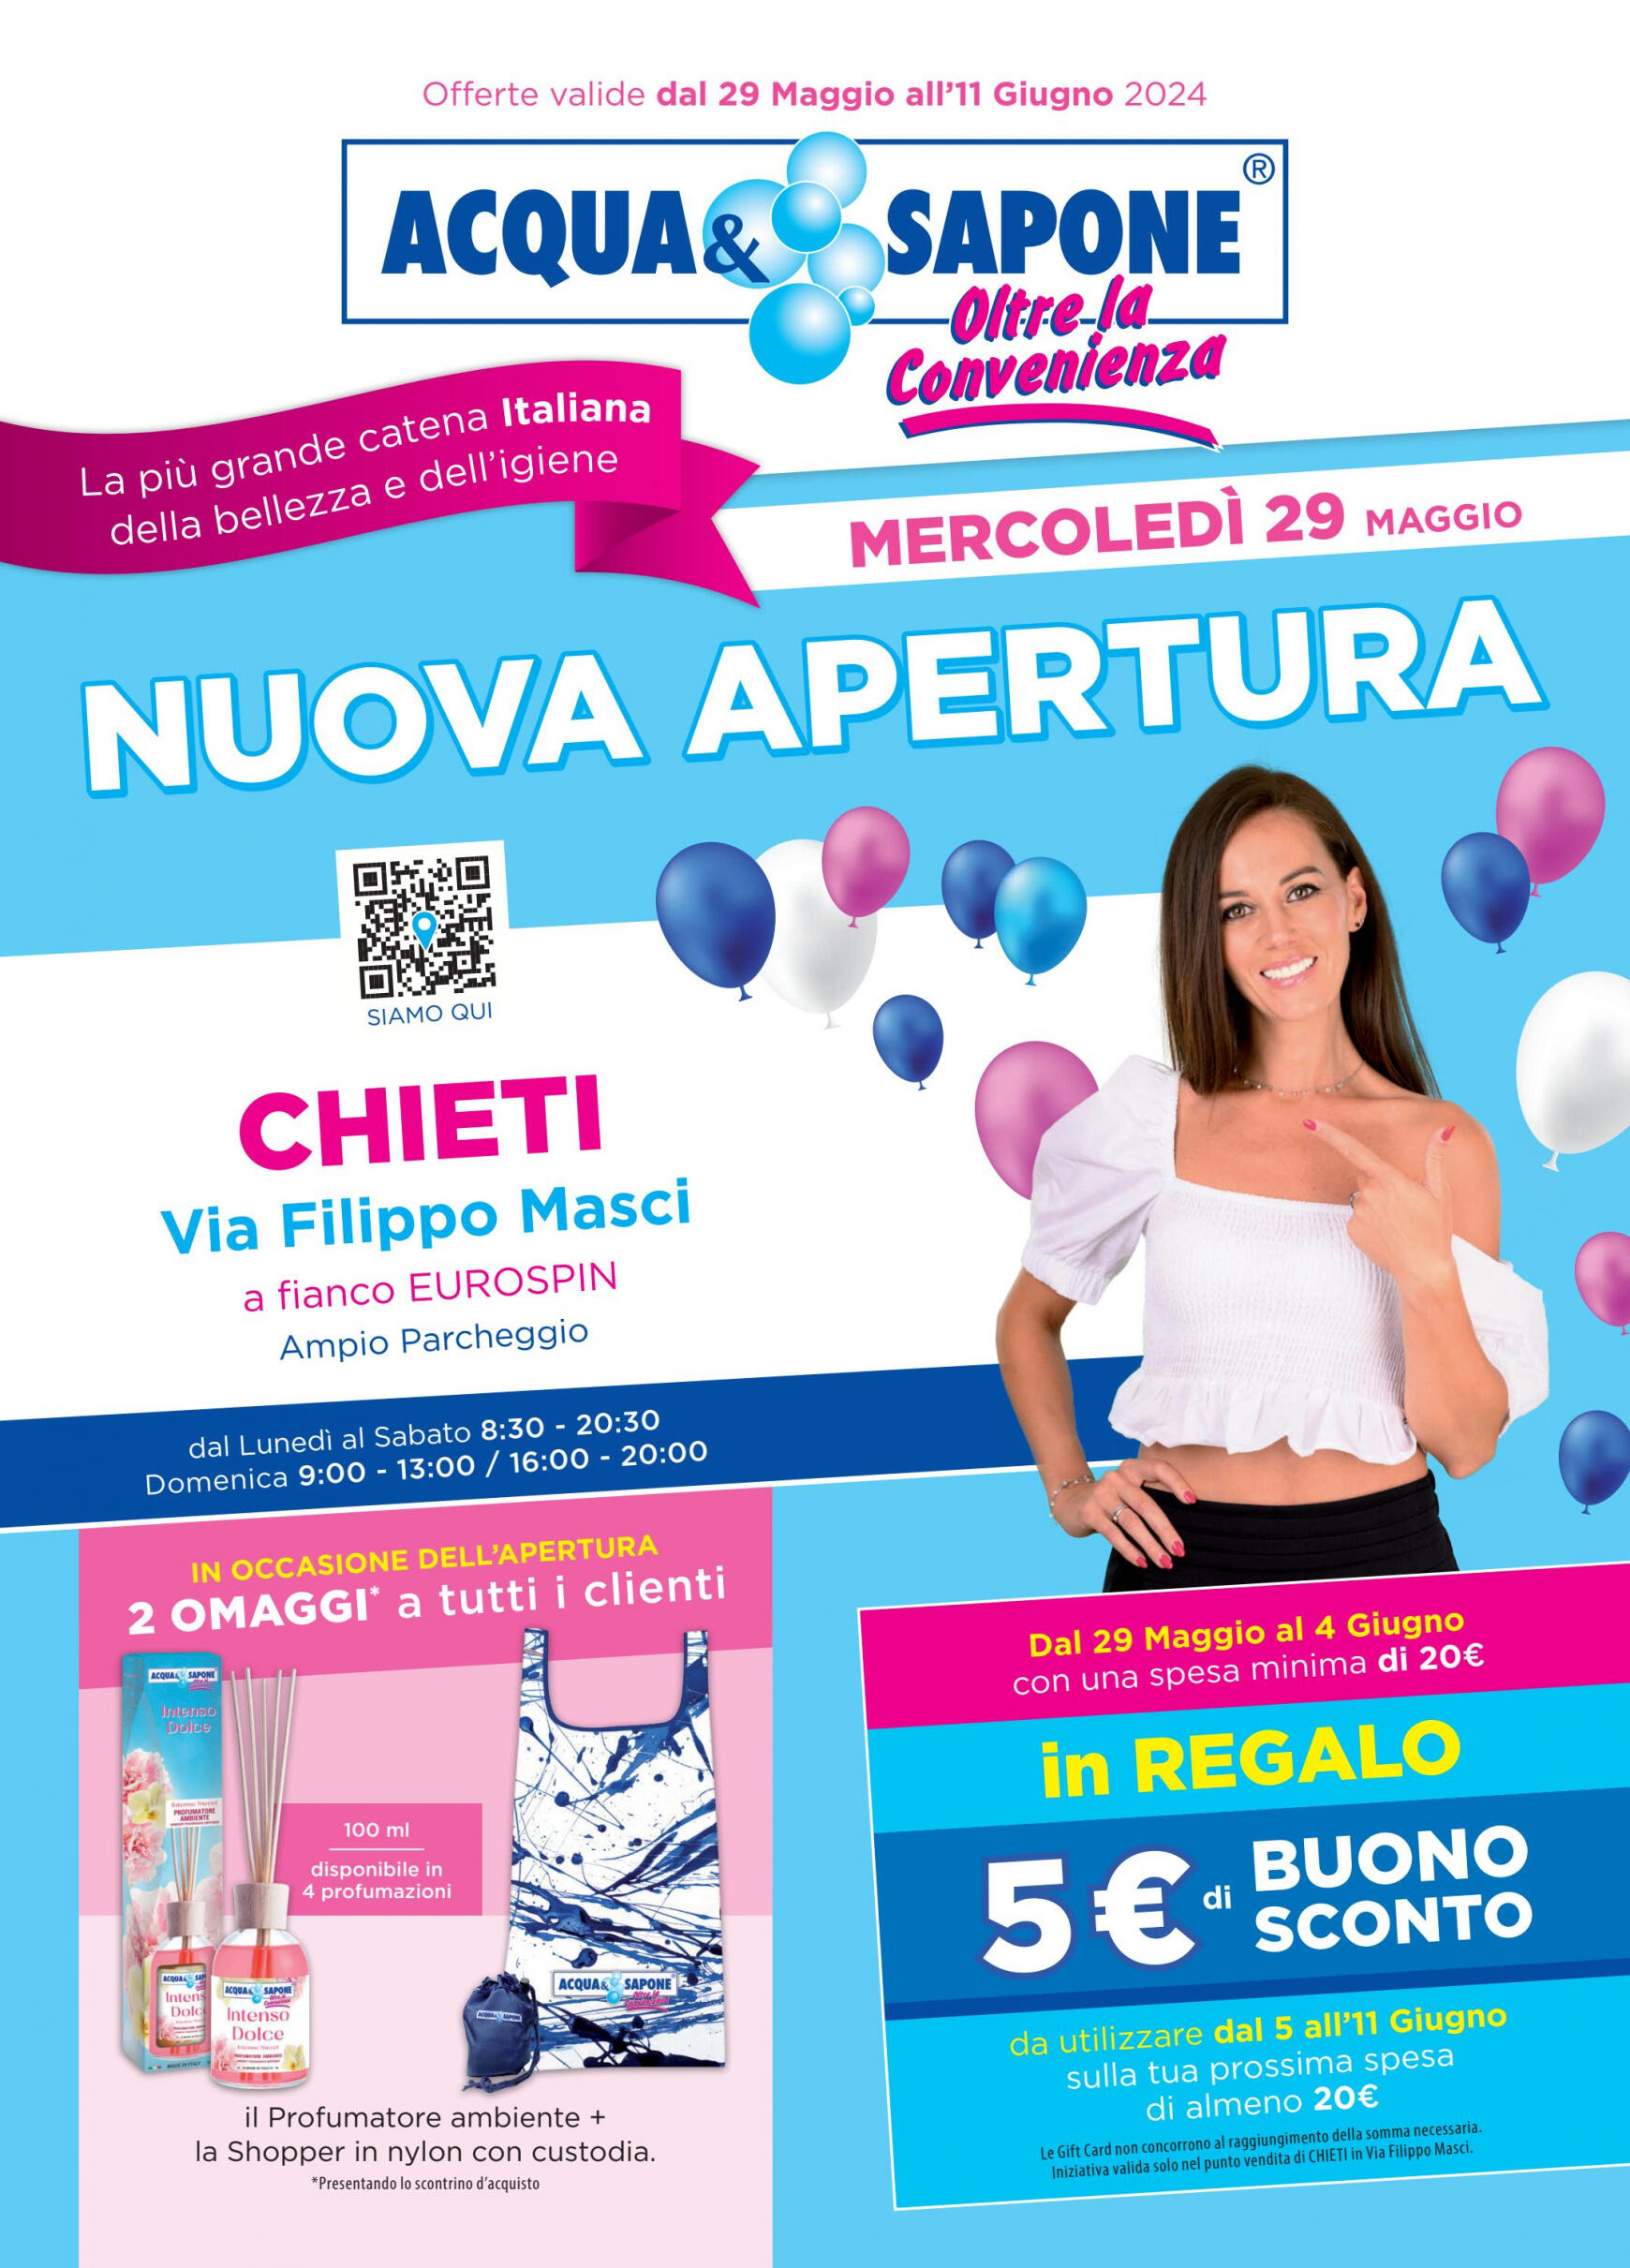 acqua-e-sapone - Nuovo volantino Acqua e Sapone - Chieti 29.05. - 11.06. - page: 1